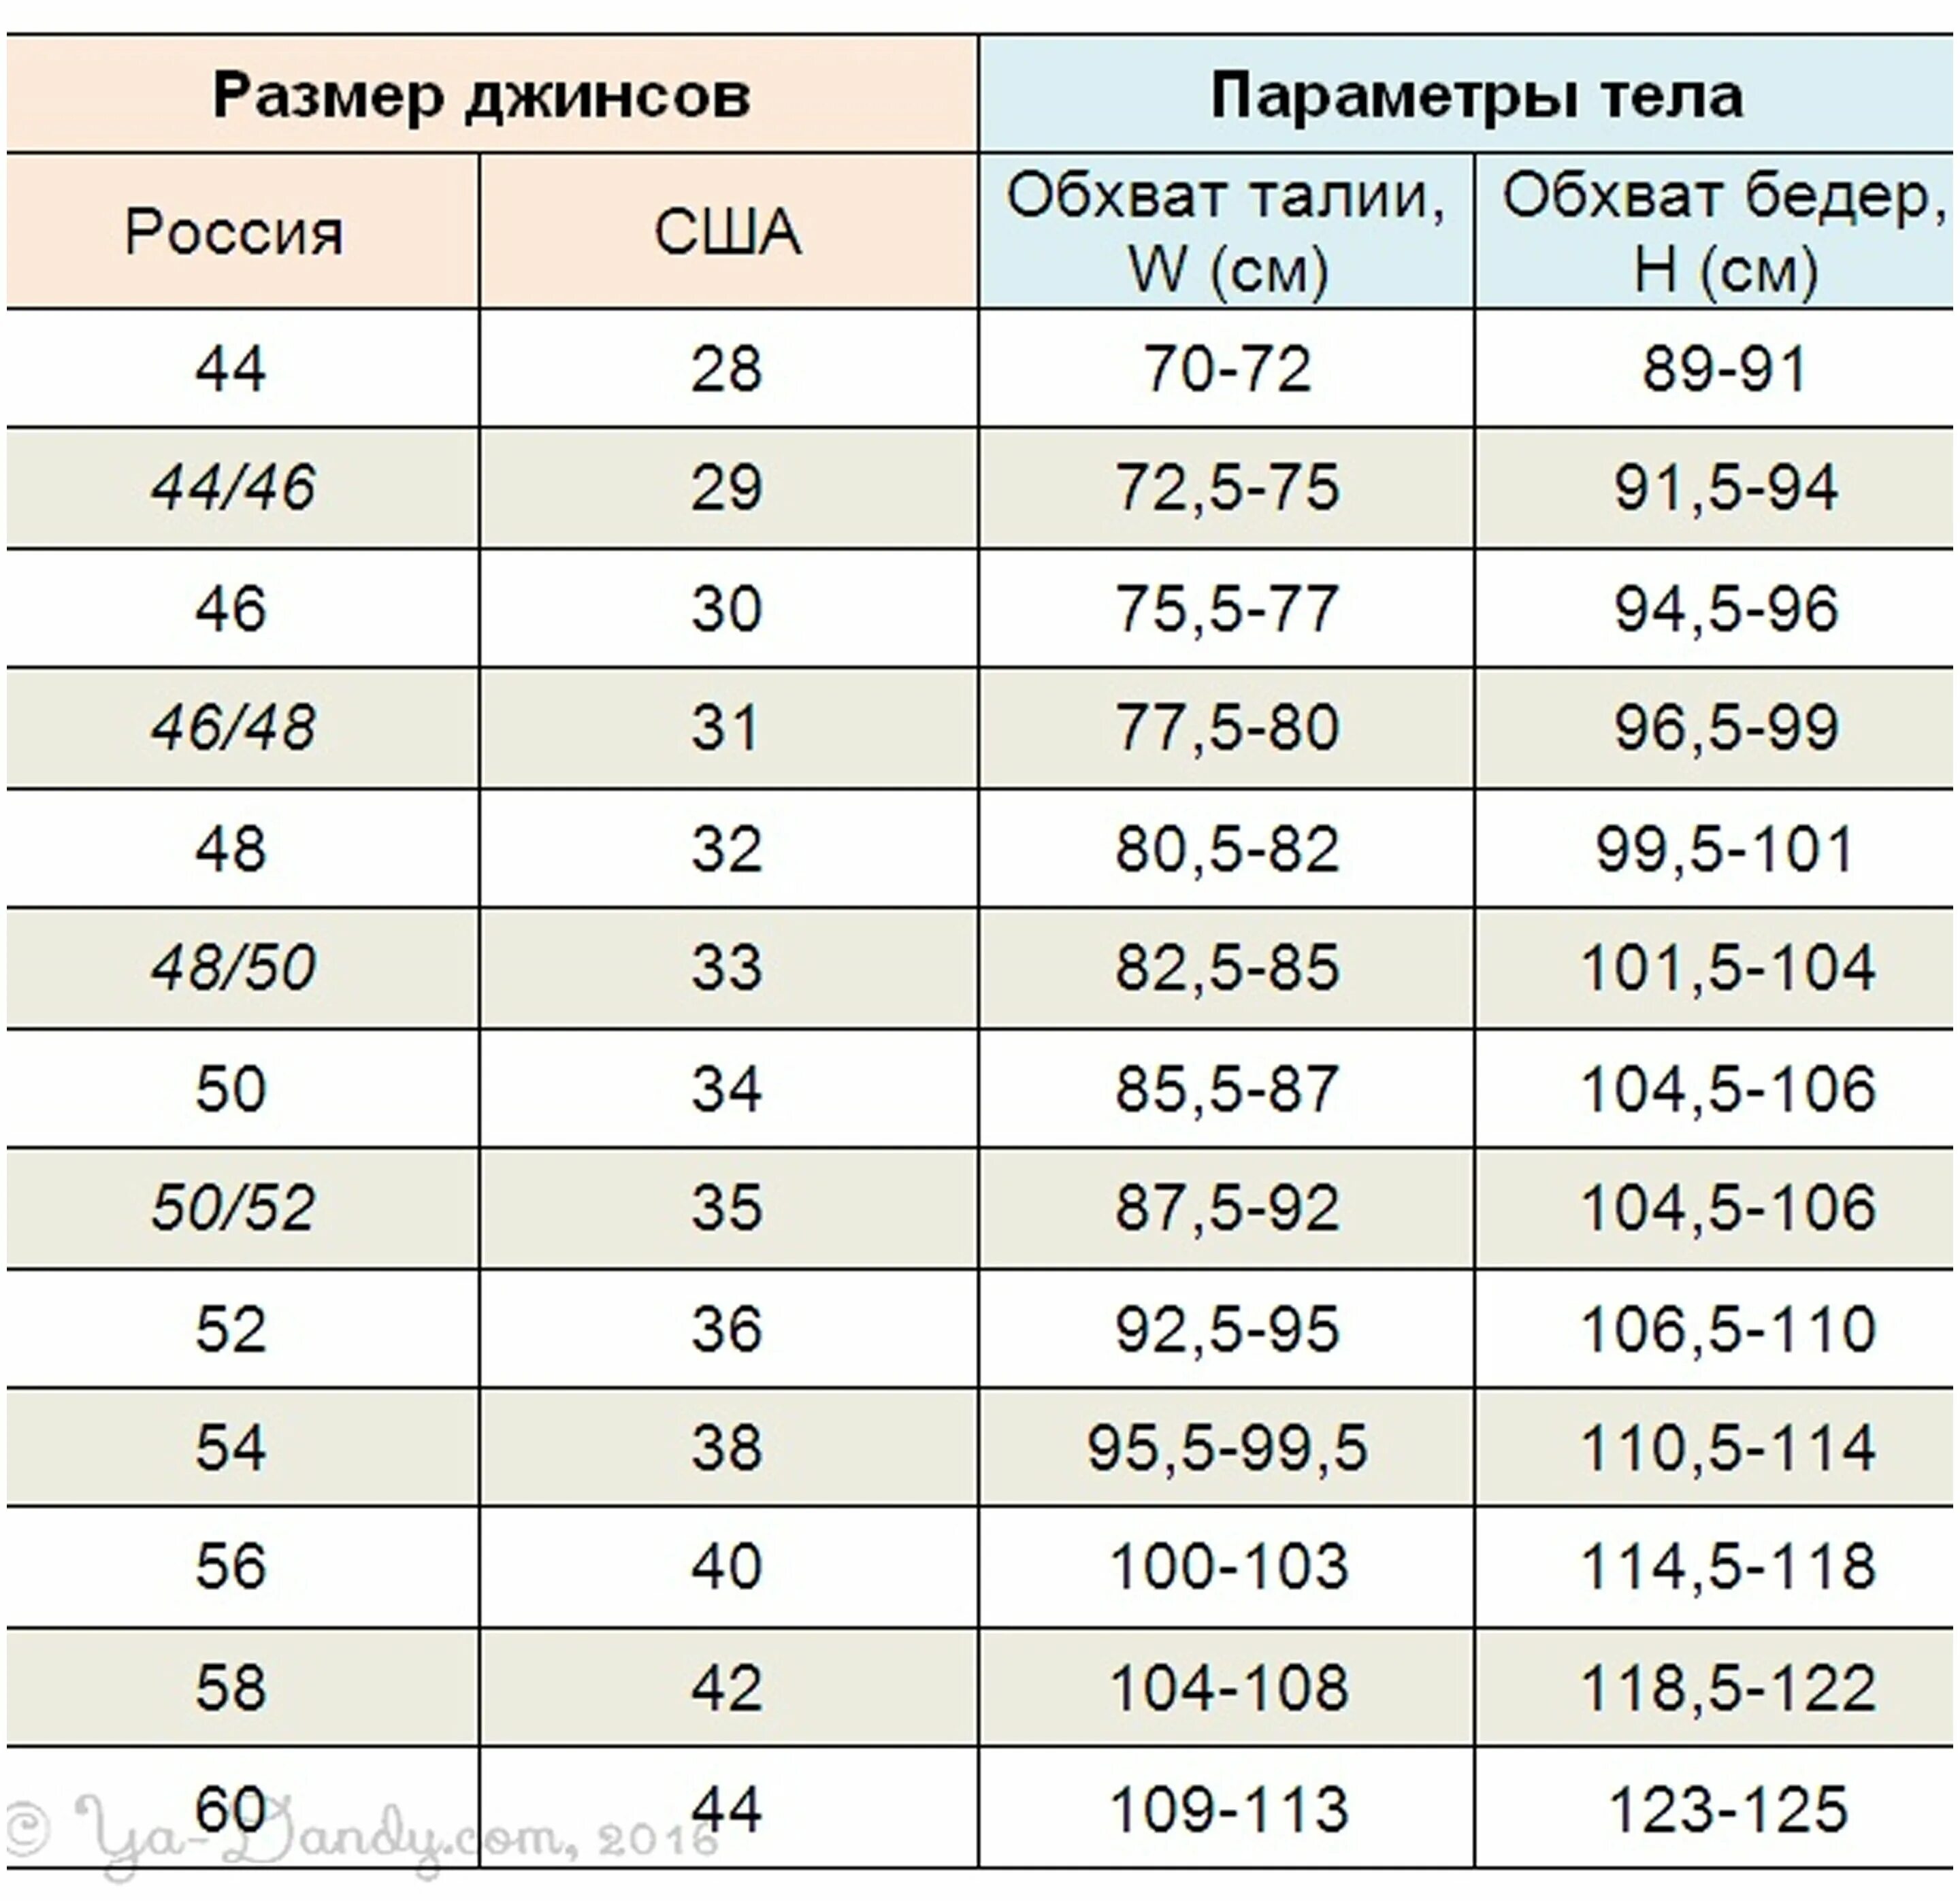 Распорядиться размер. Размер мужских джинсов таблица для российского размера. 30/32 Размер джинс мужских. Размерная сетка мужских джинс. Таблица соответствия размеров джинсов для мужчин.